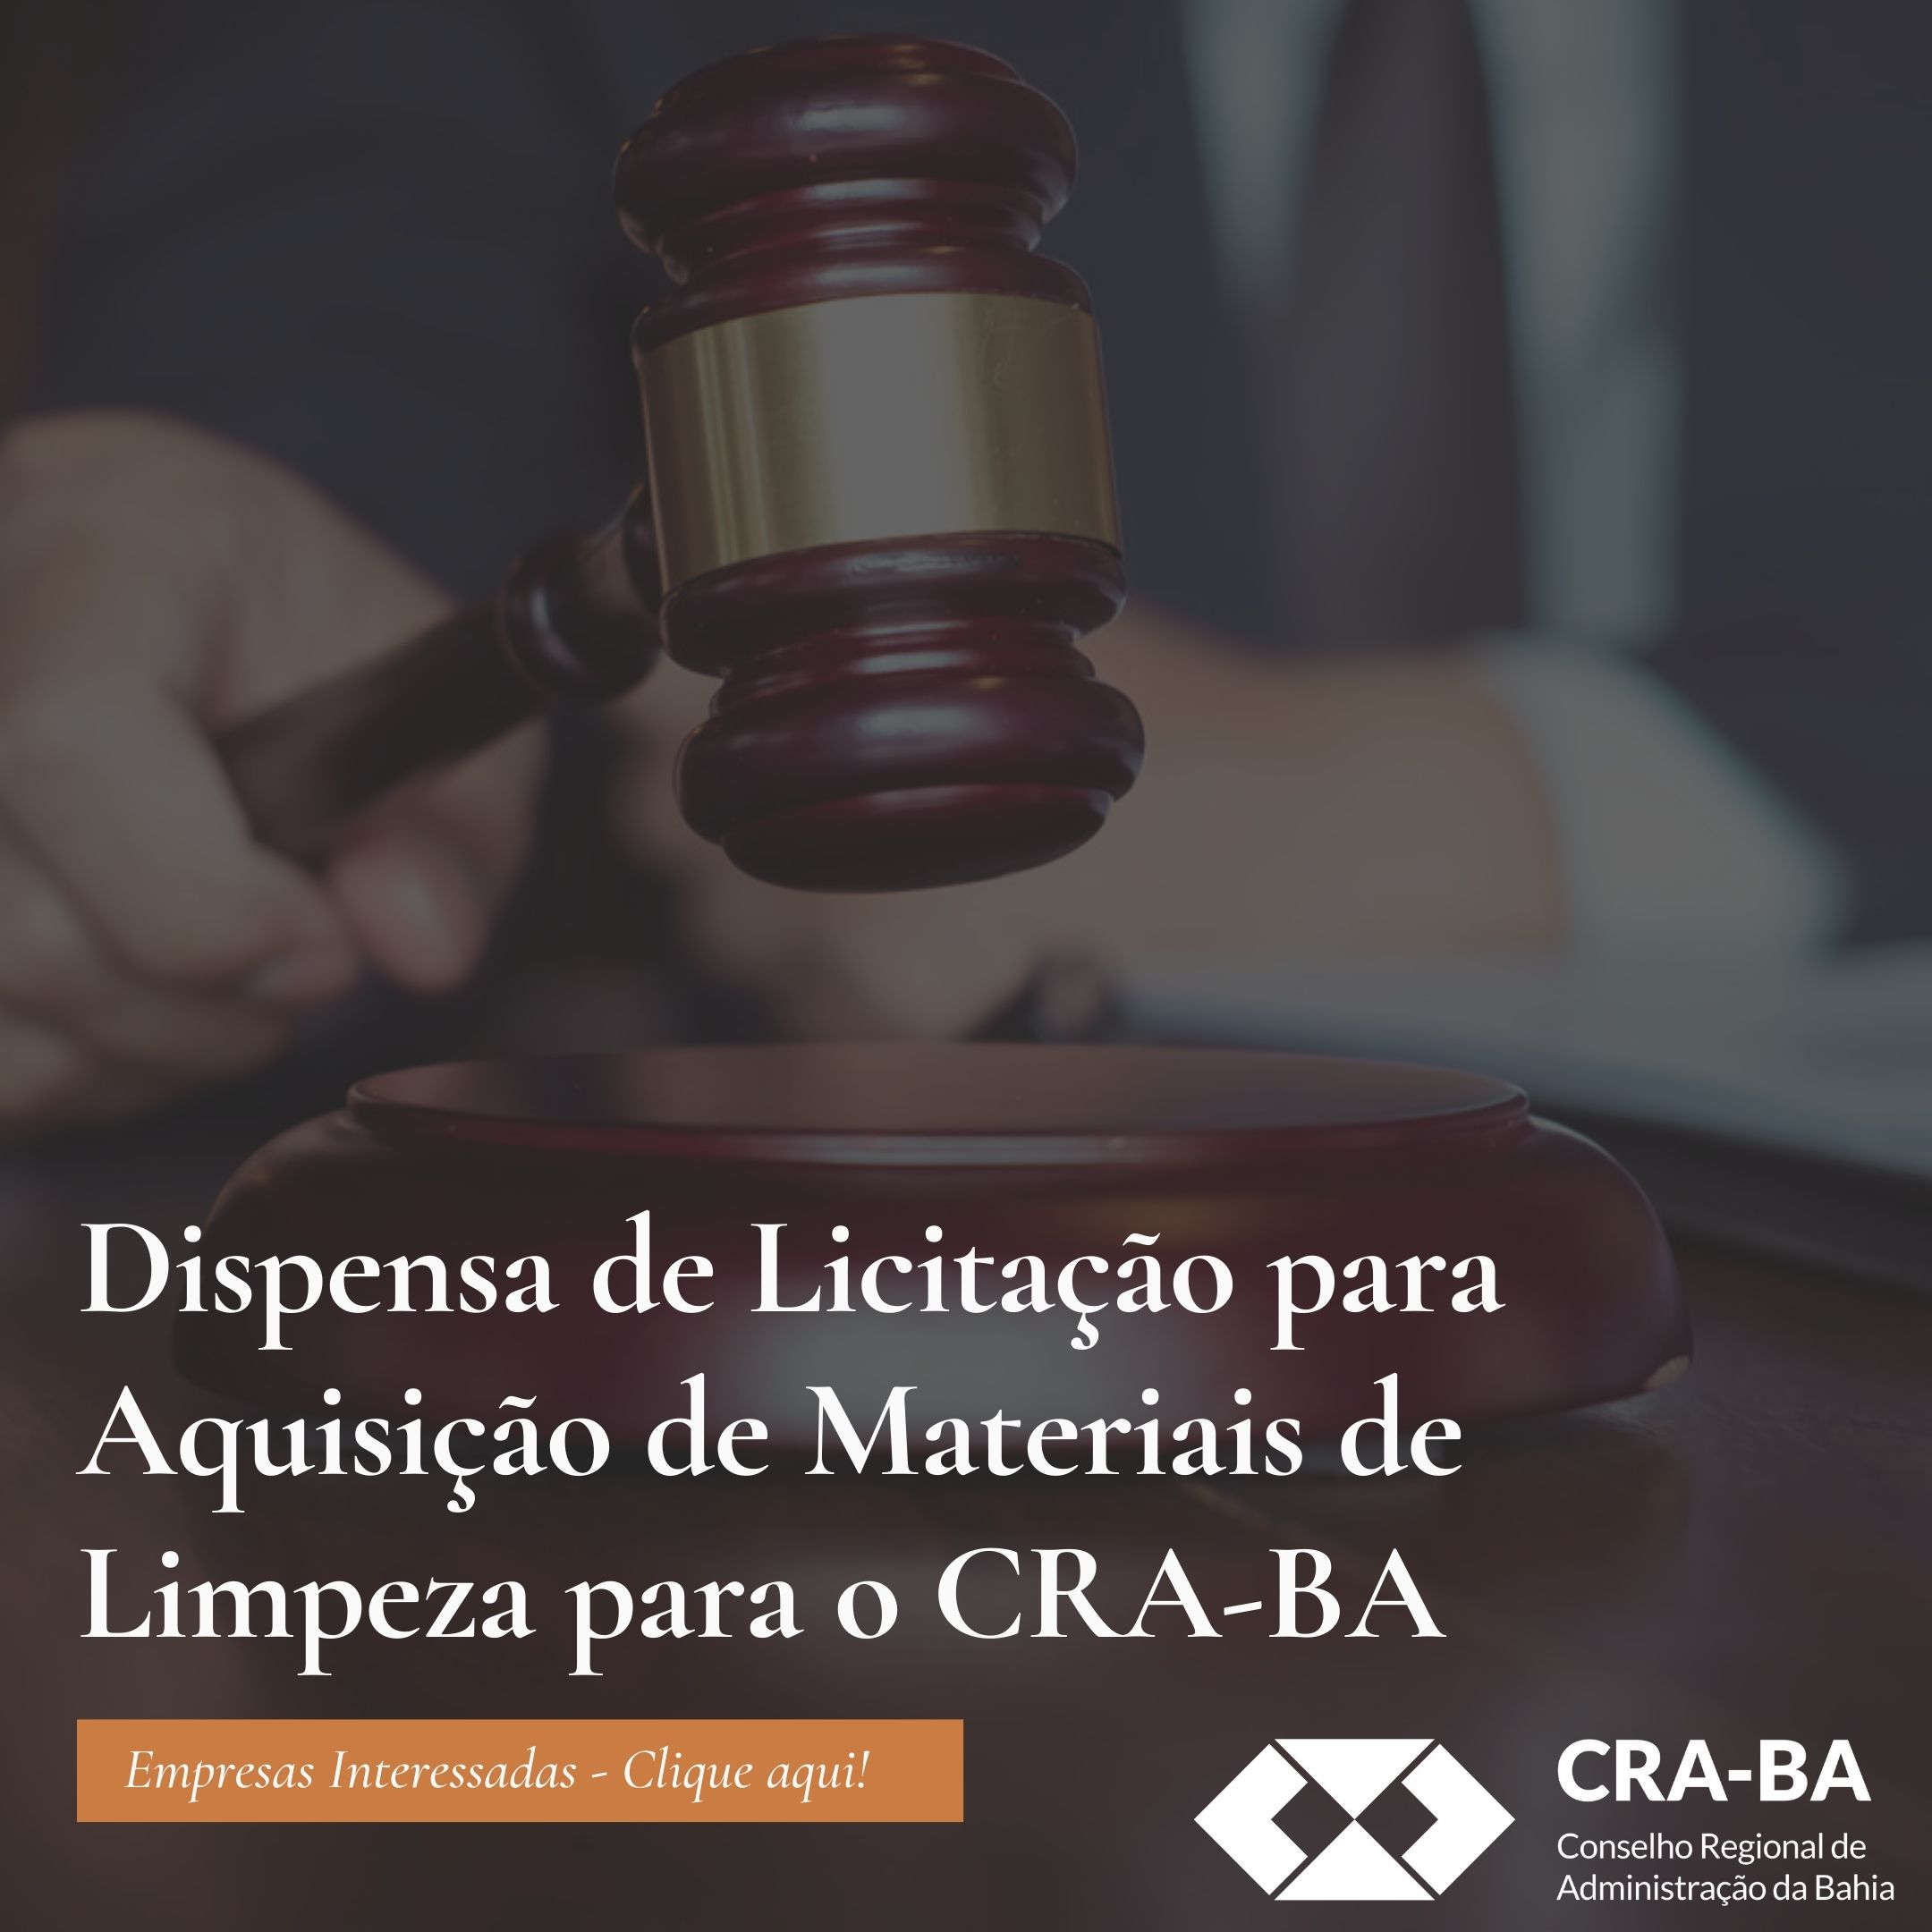 You are currently viewing Dispensa de Licitação para aquisição de materiais de limpeza para o CRA-BA